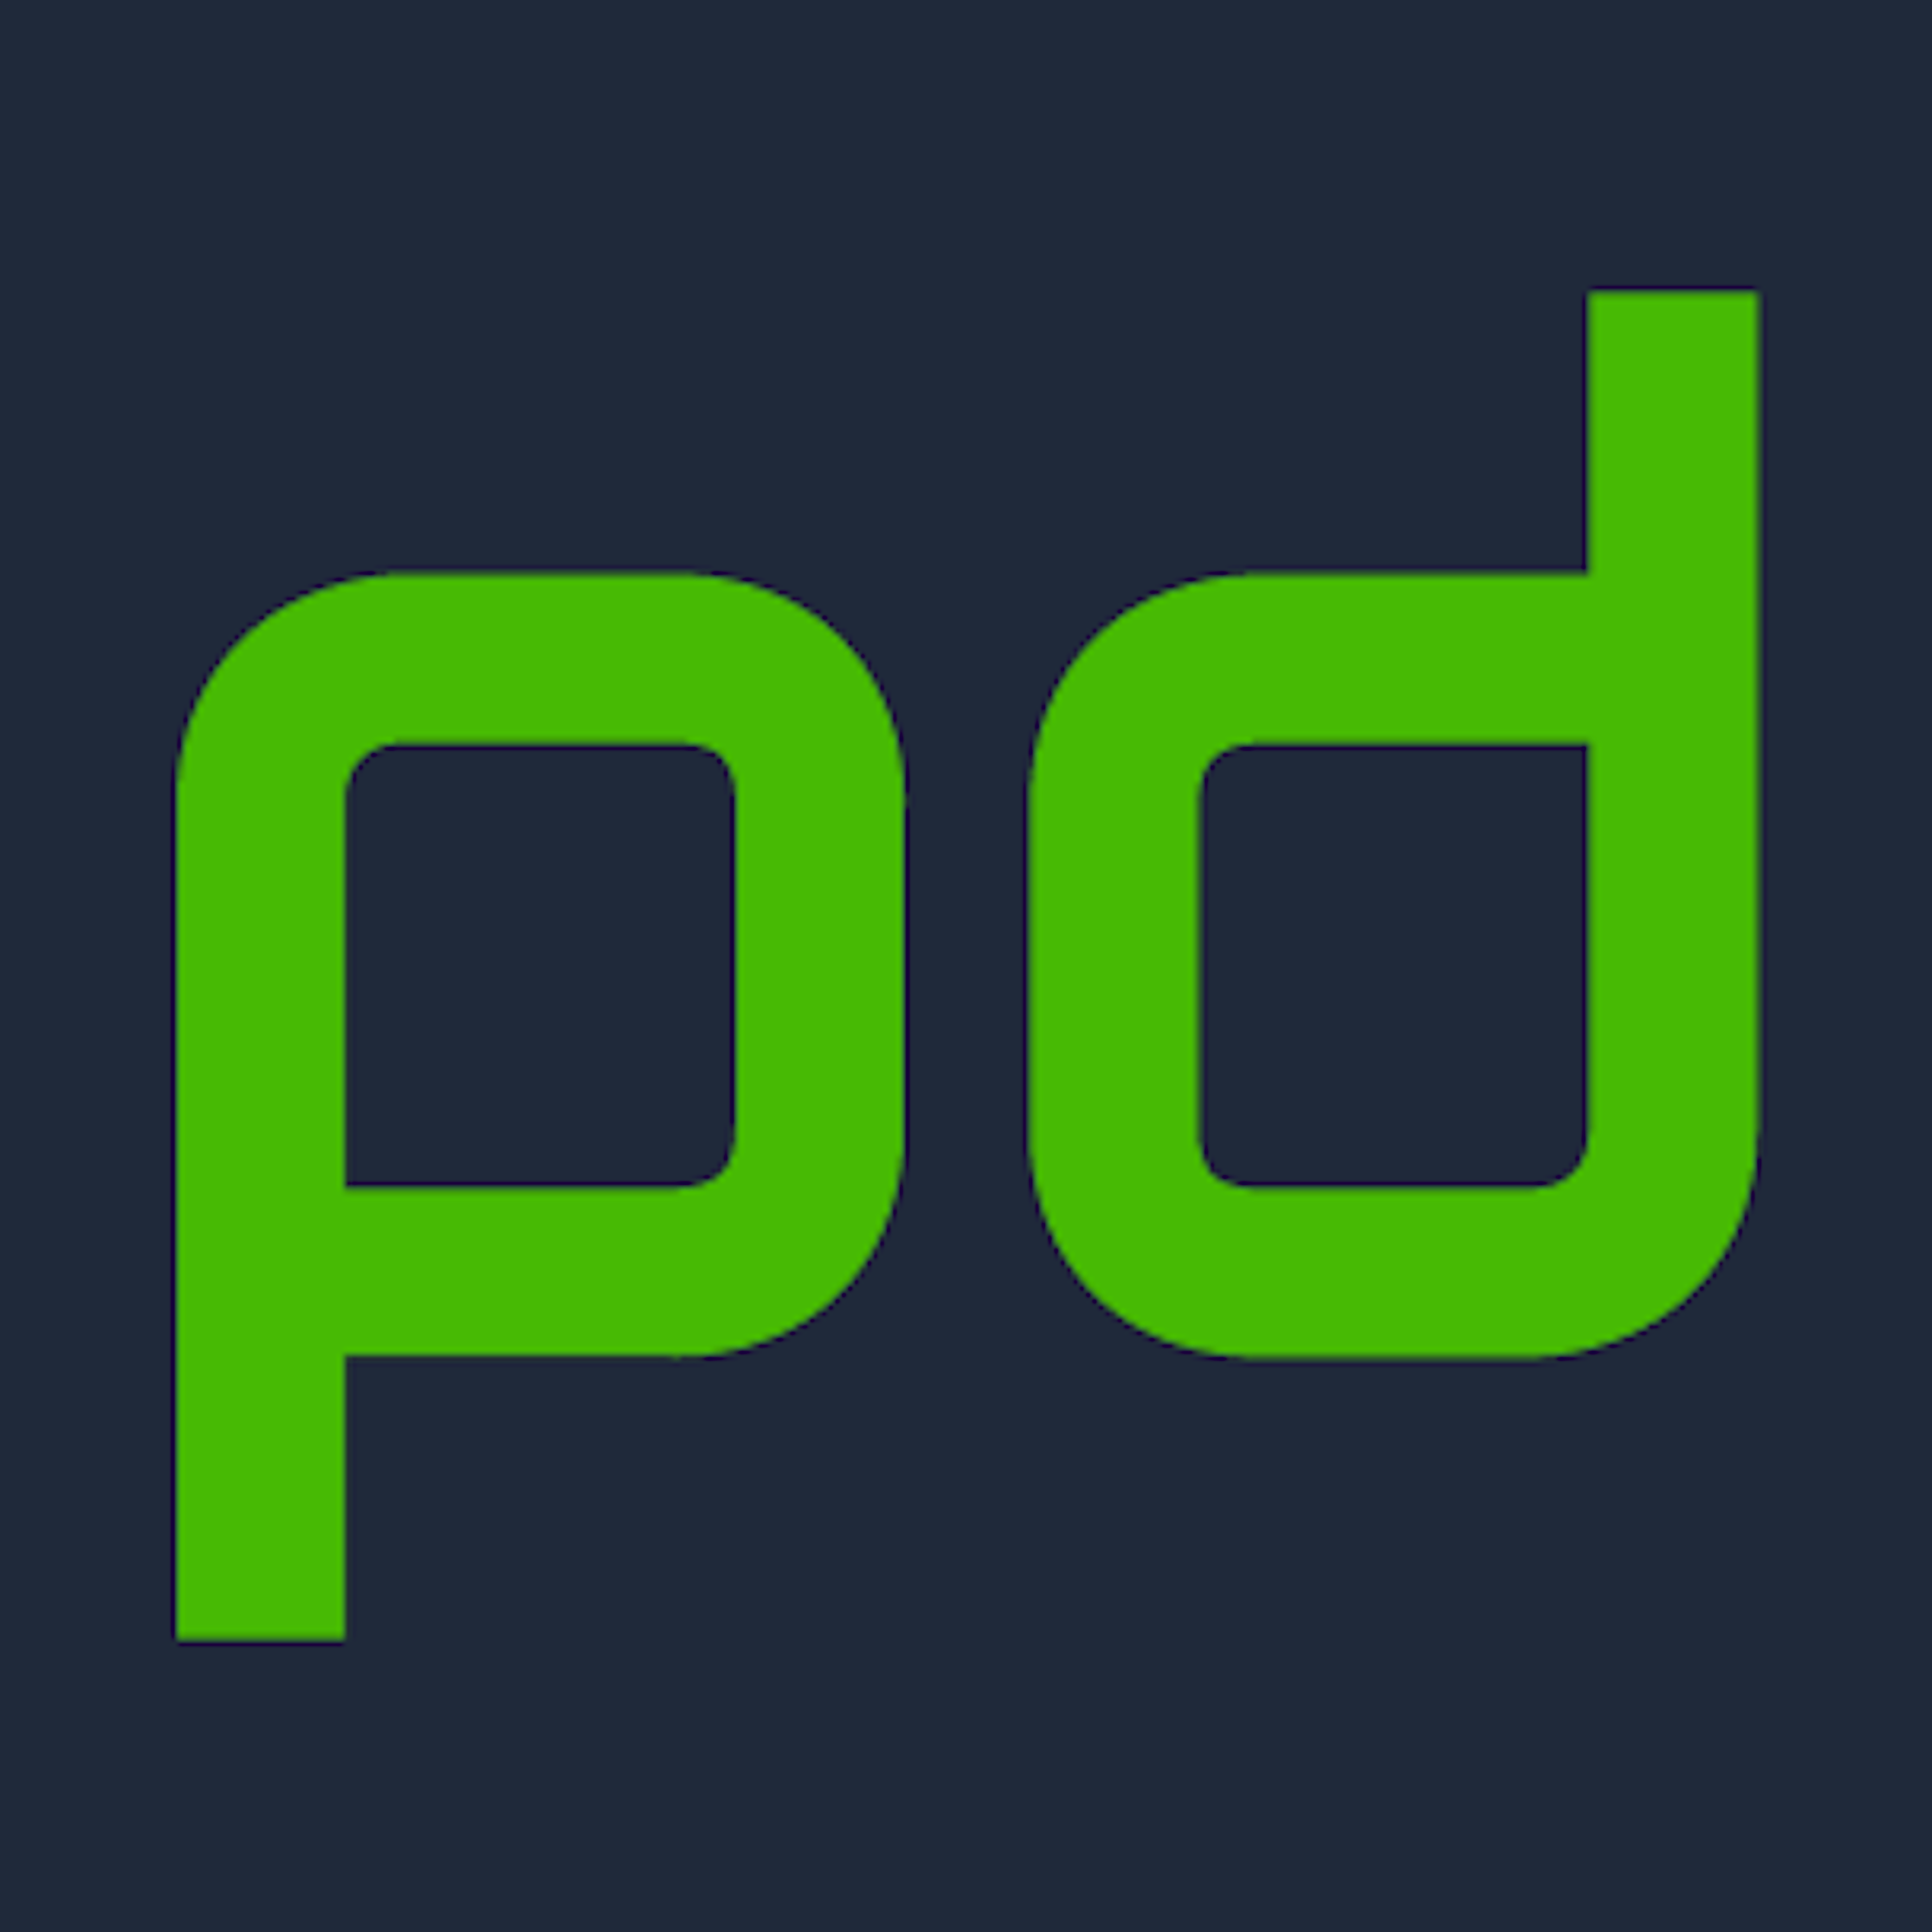 PagerDuty Logo